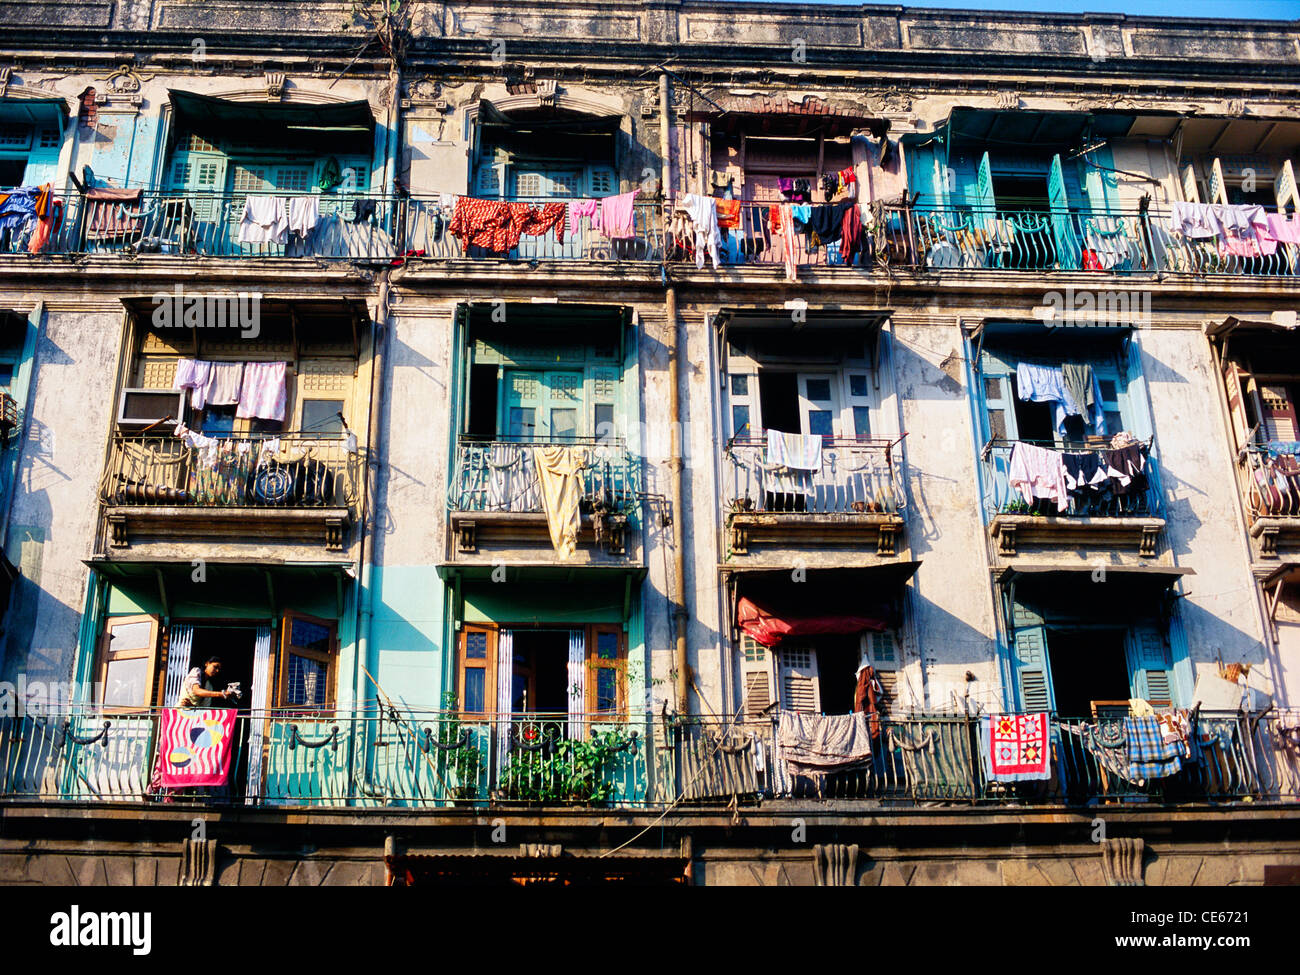 Exterior of mass urban housing Bombay Mumbai Maharashtra India Stock Photo